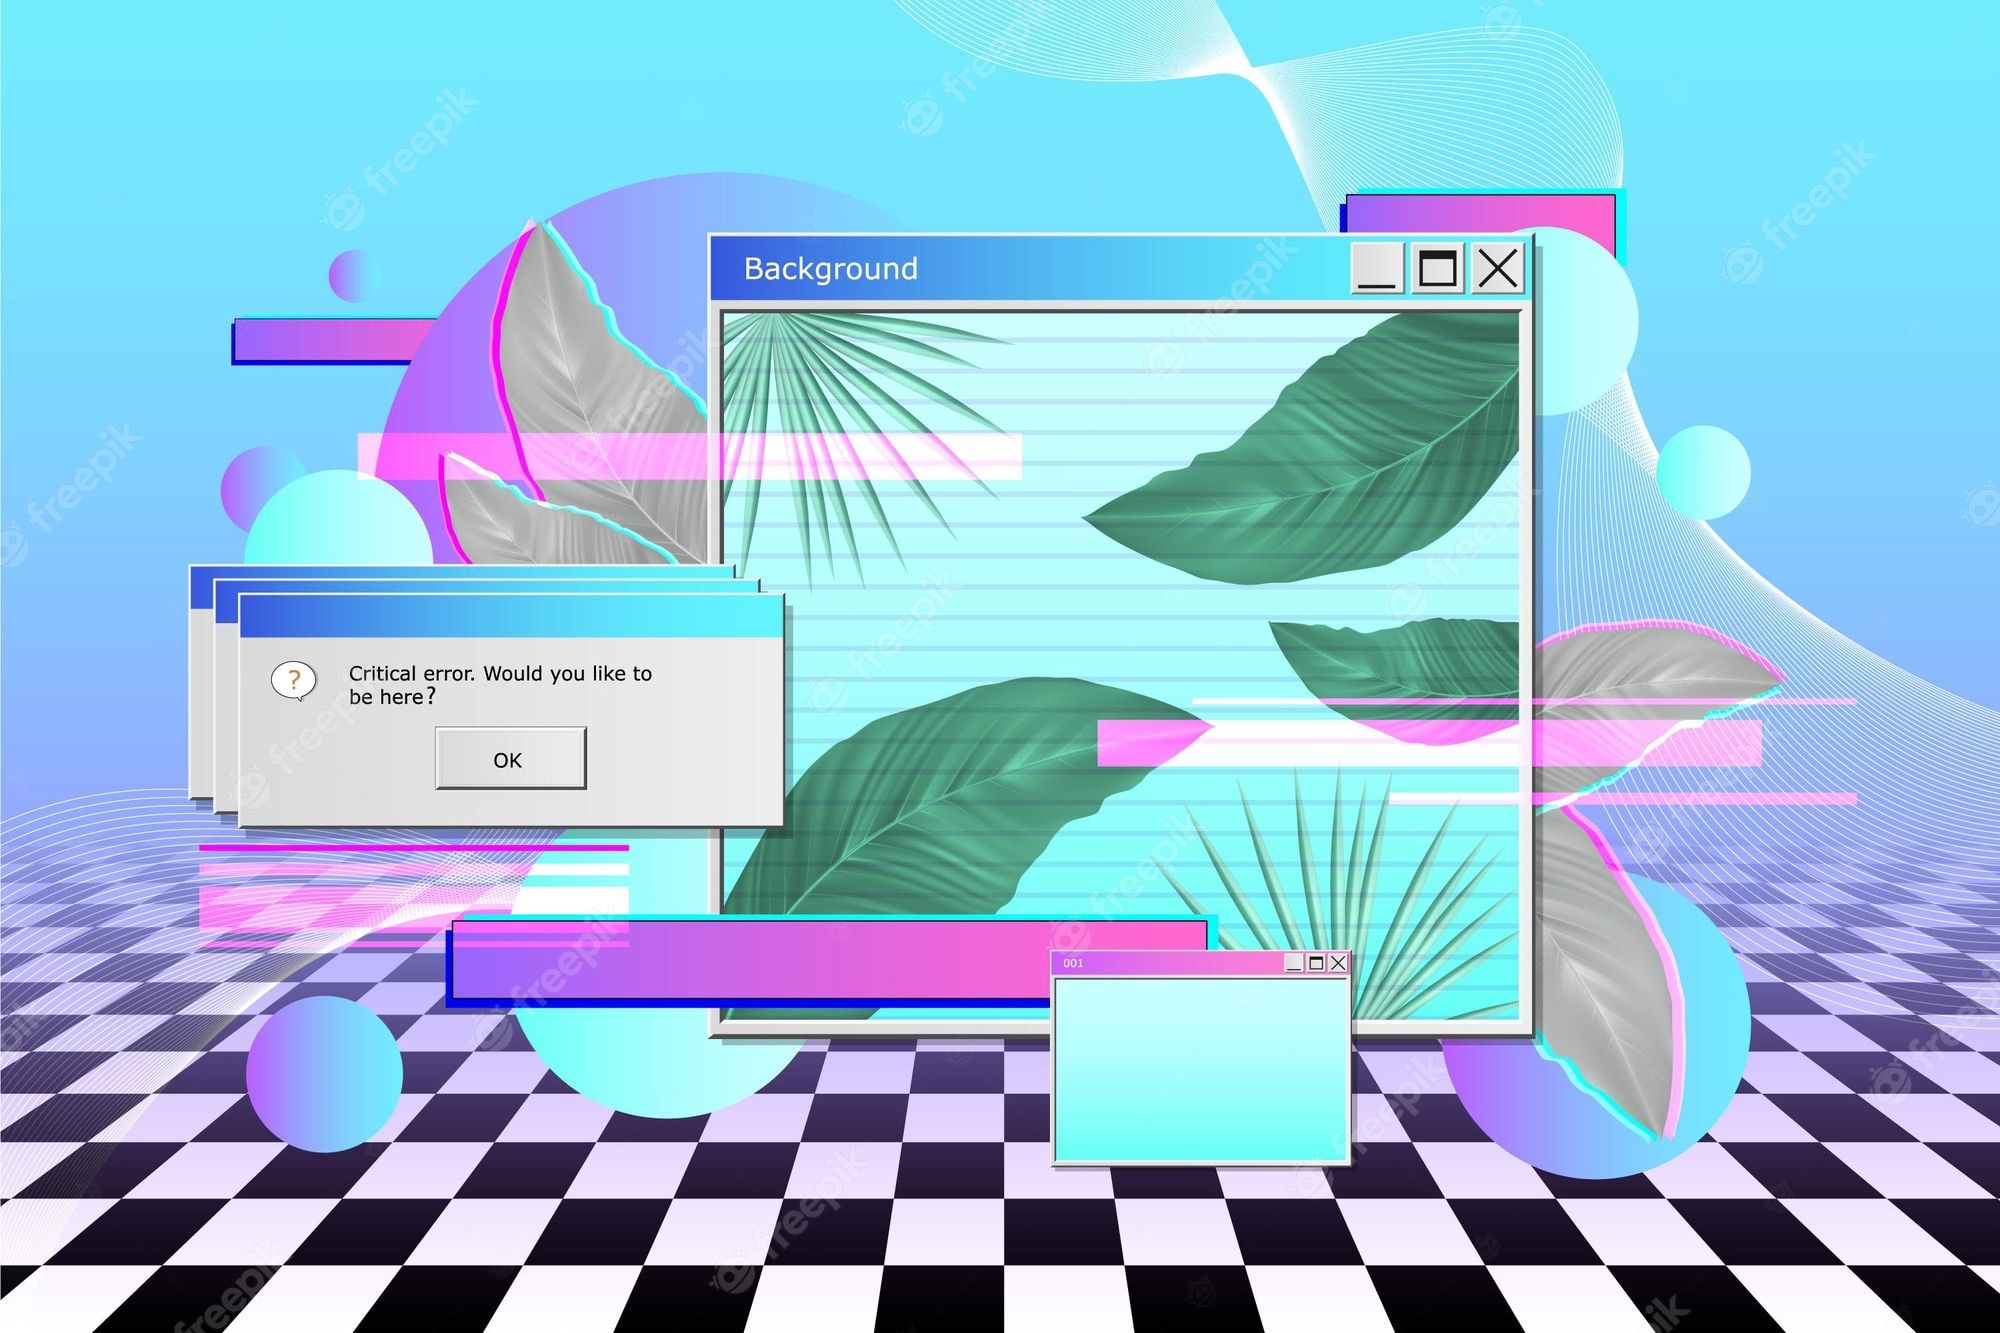  Windows XP Hintergrundbild 2000x1333. Y2k Computer Image